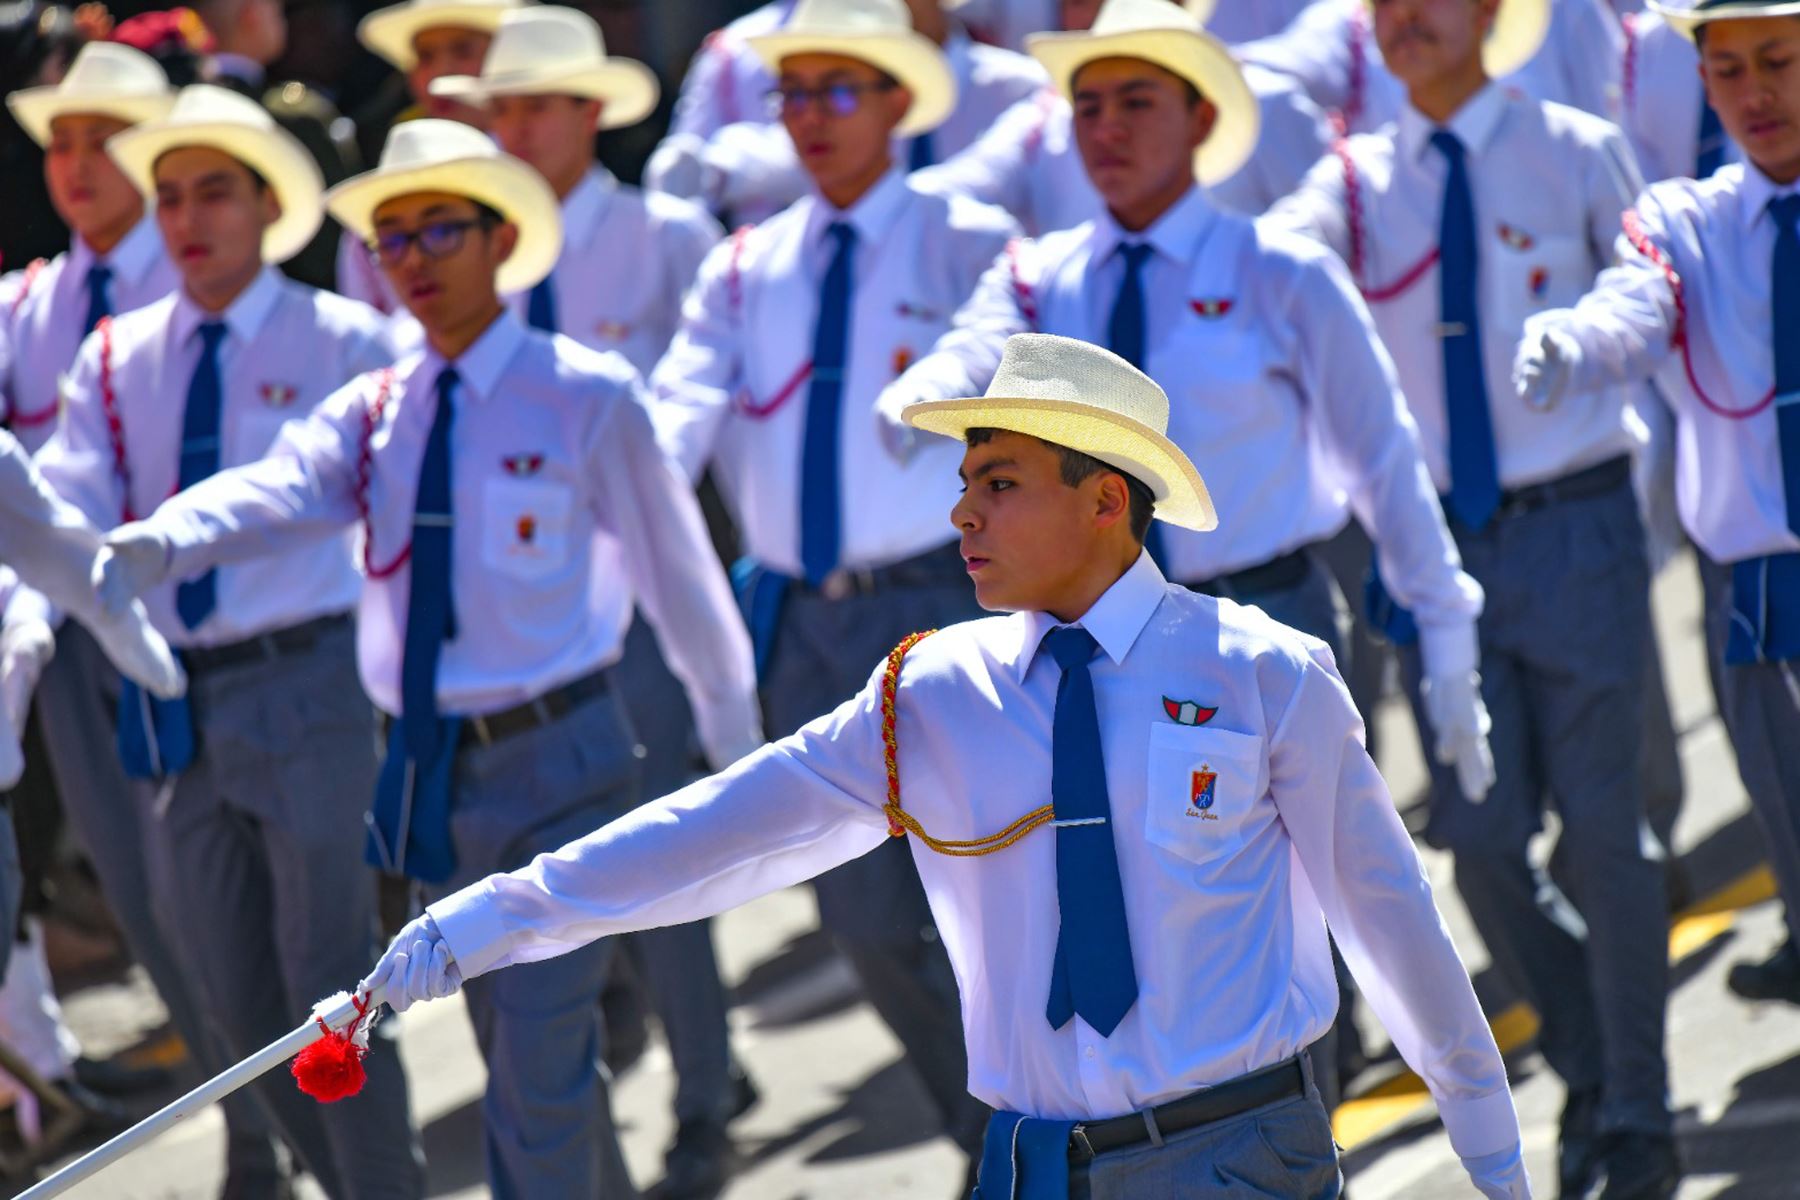 En el distrito de Cayma, en Arequipa se izó la Bandera más grande de la región, al conmemorarse el Centésimo Cuadragésimo Tercer Aniversario de la Batalla de Arica y Día de la Bandera.
Foto: Cortesía Diego Ramos